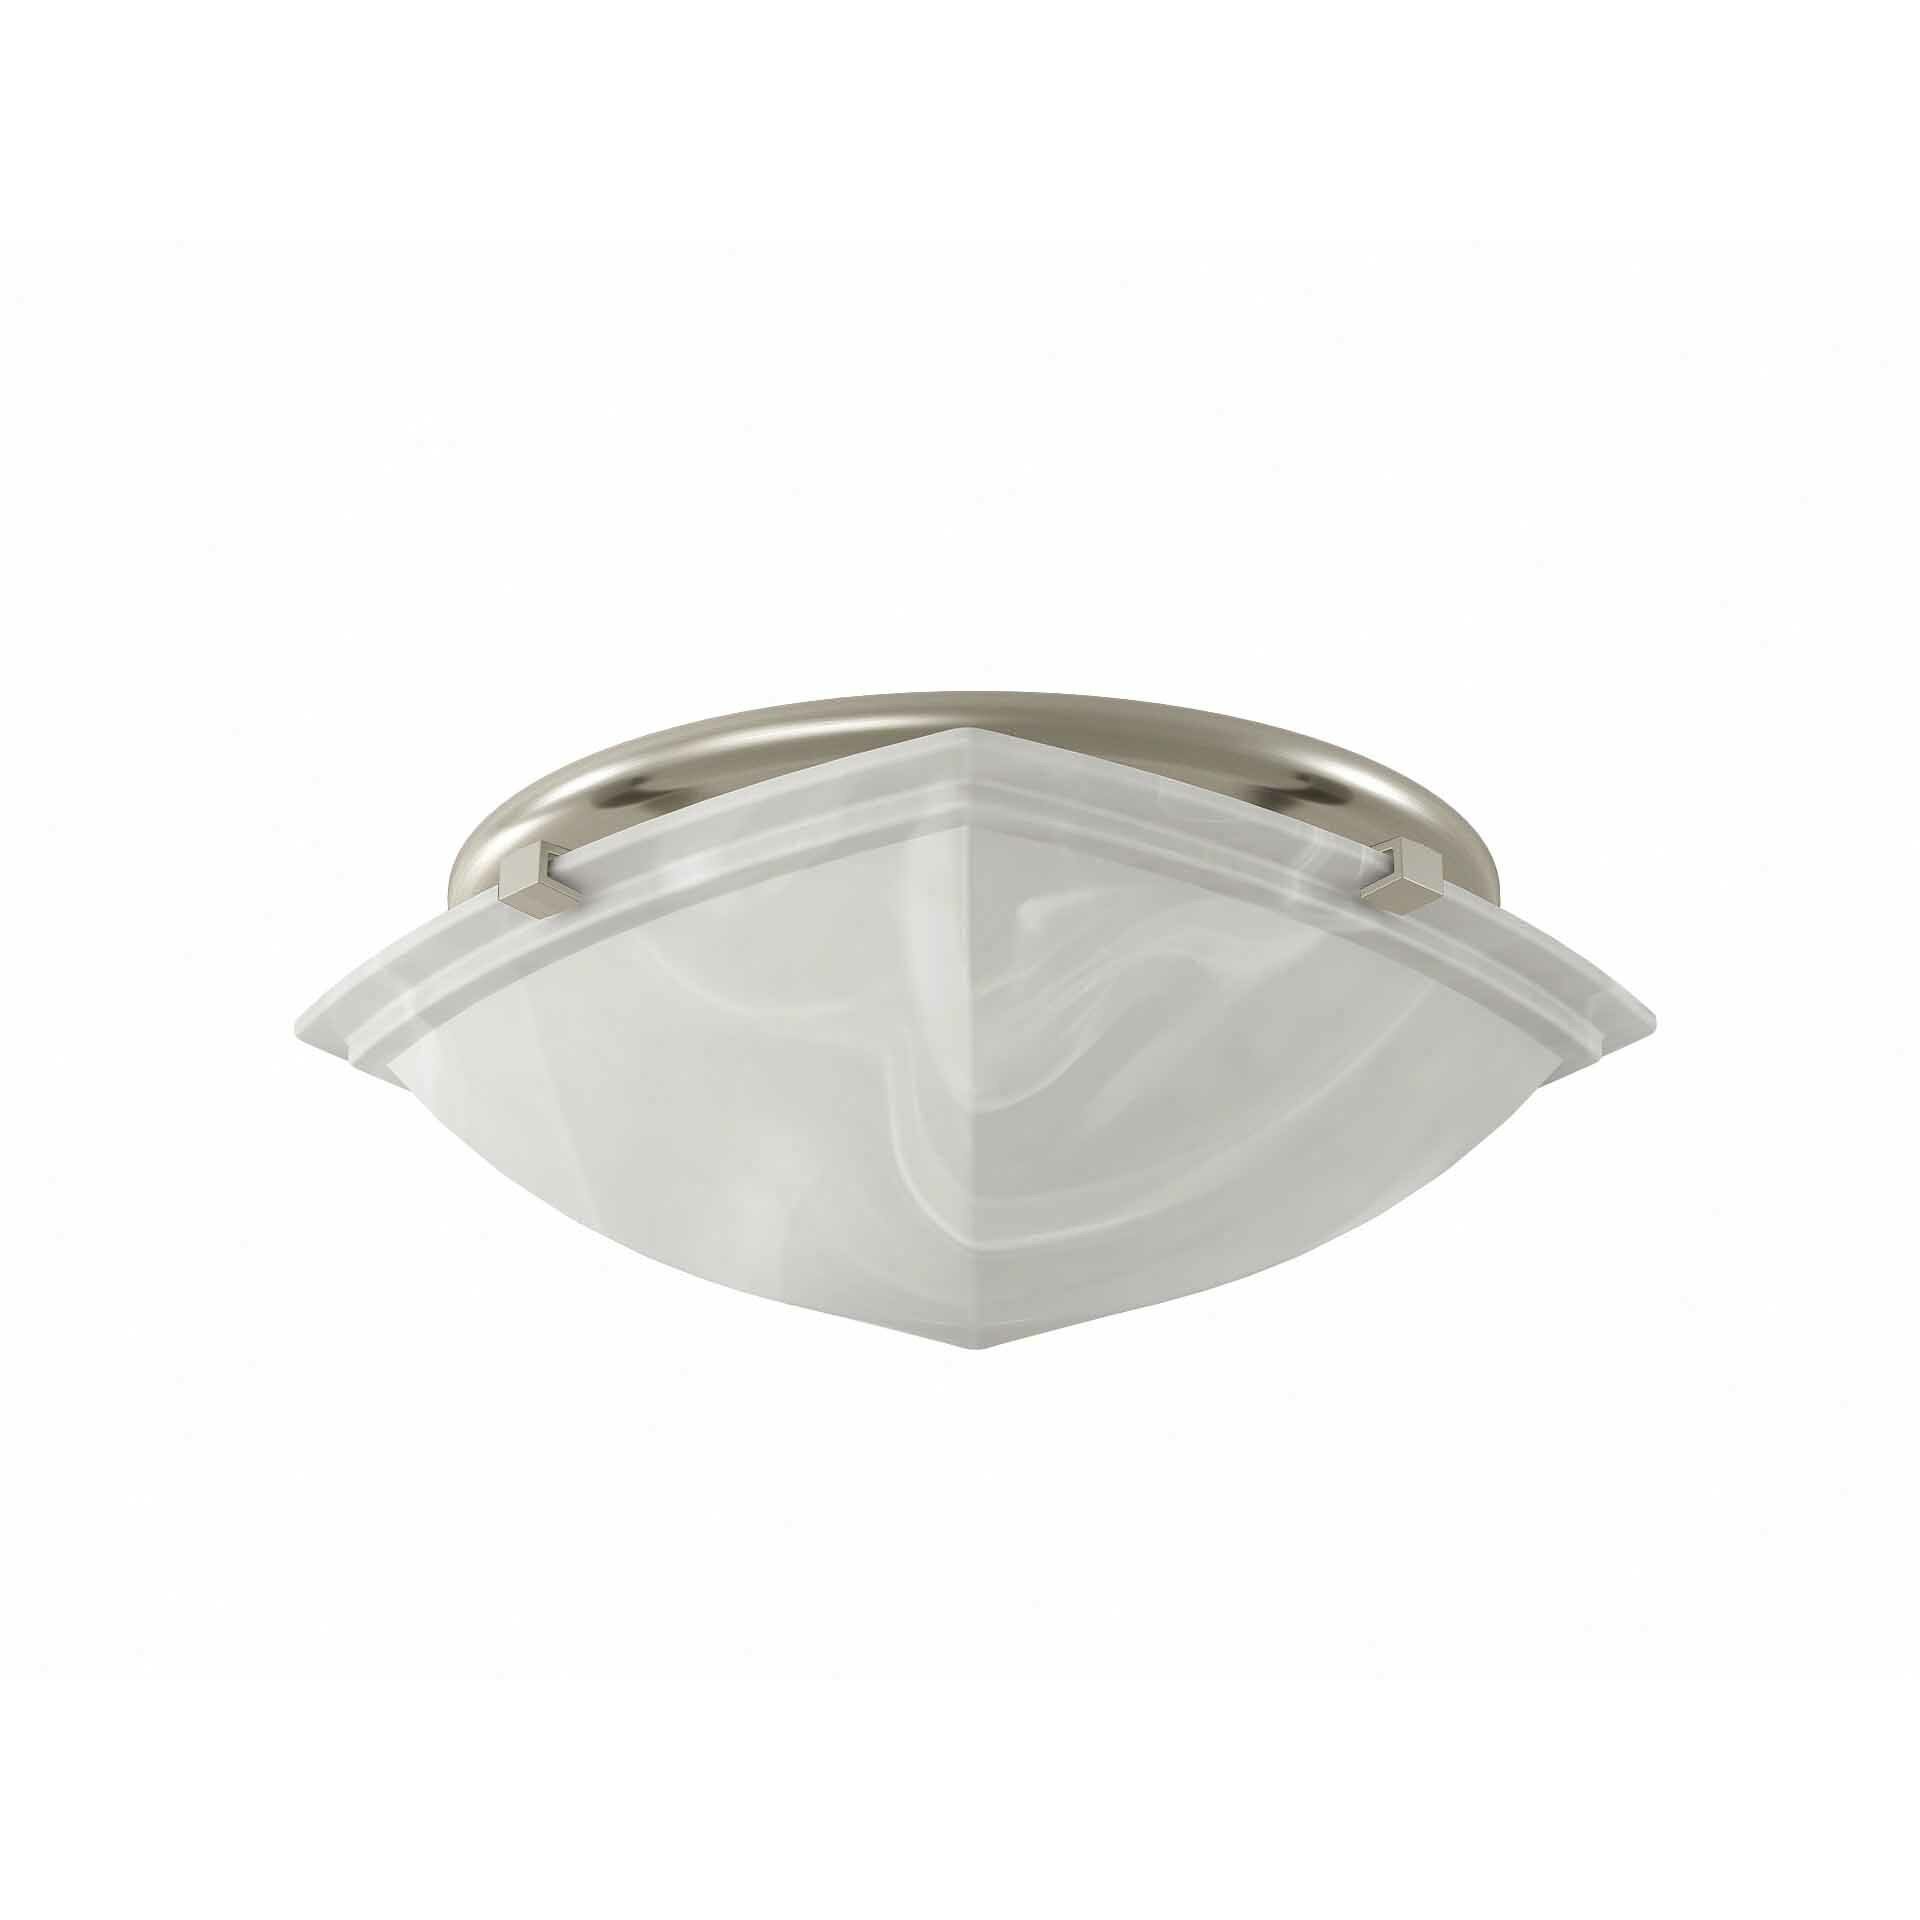 Broan Bathroom Fan Light
 Broan 80 CFM Bathroom Fan with Light & Reviews